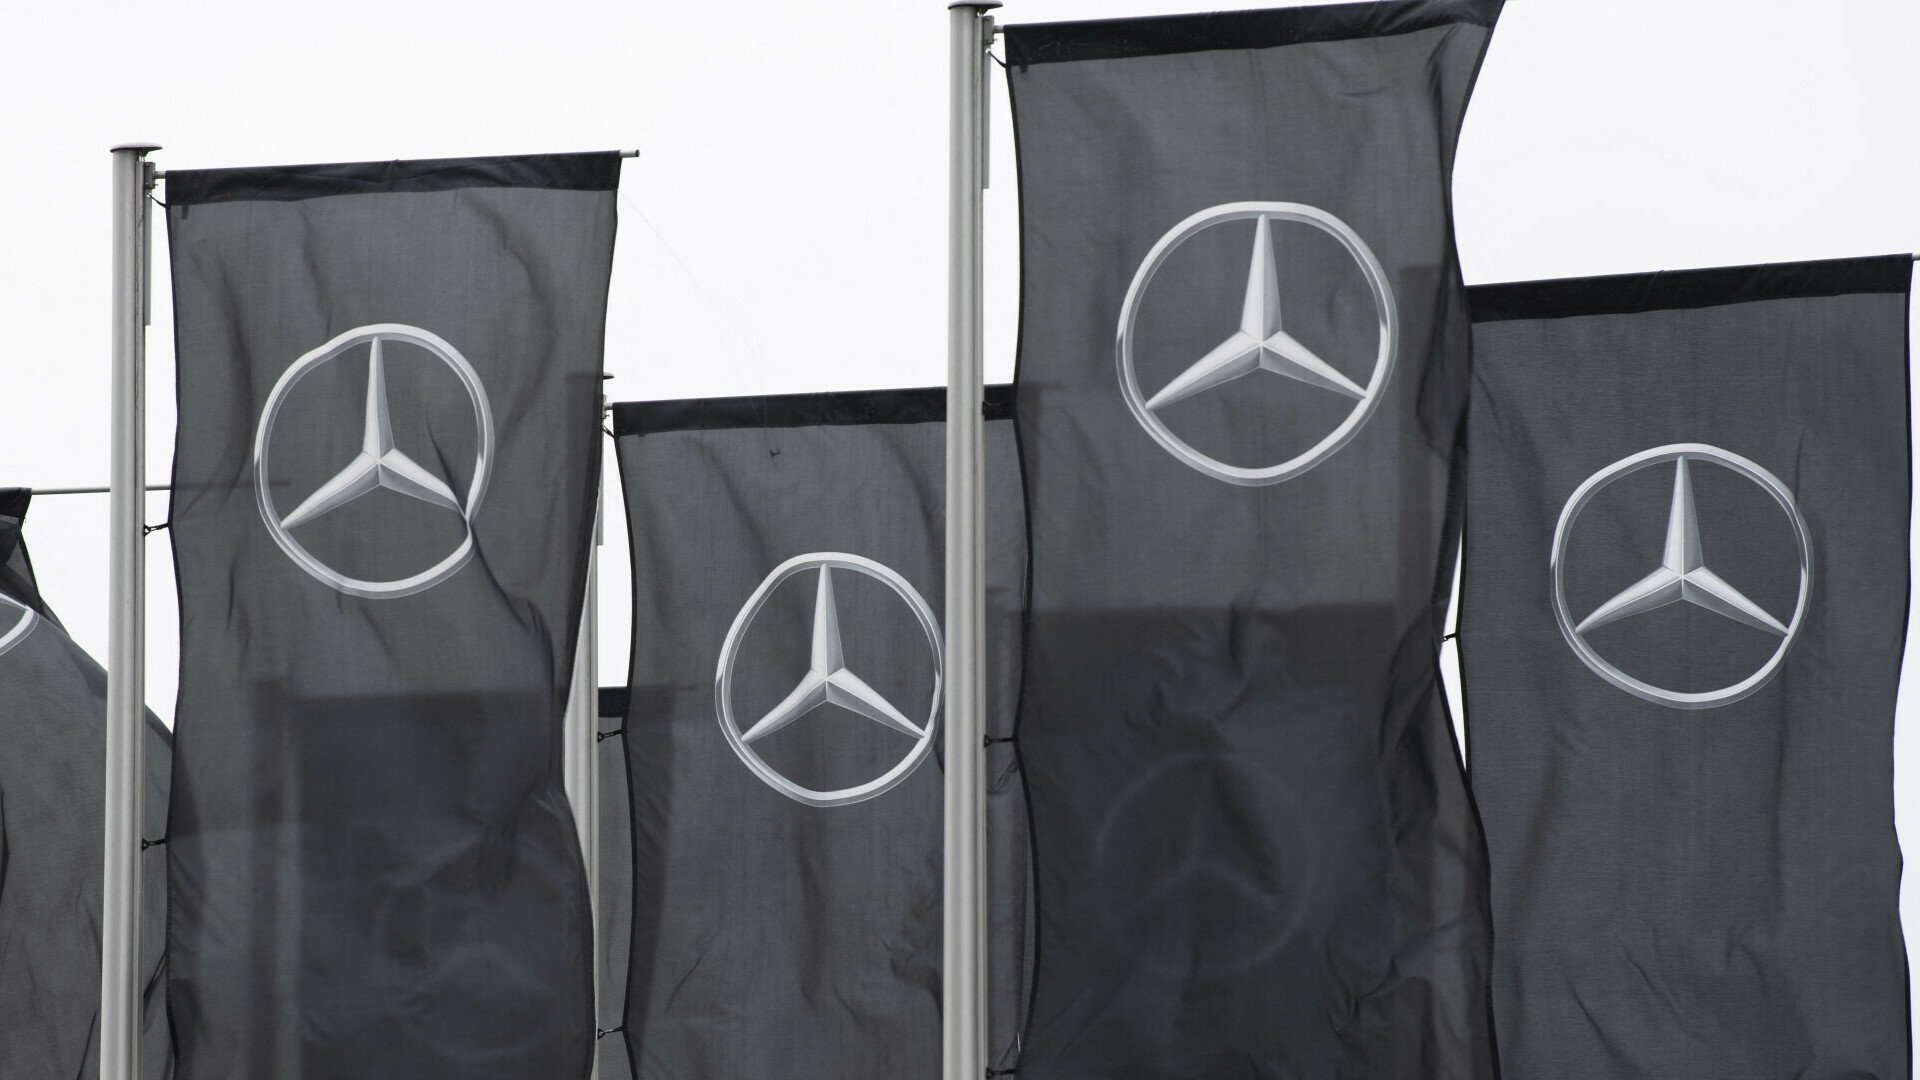 Korupcijski skandal u Mercedesu: Dvojica menadžera primala mito?